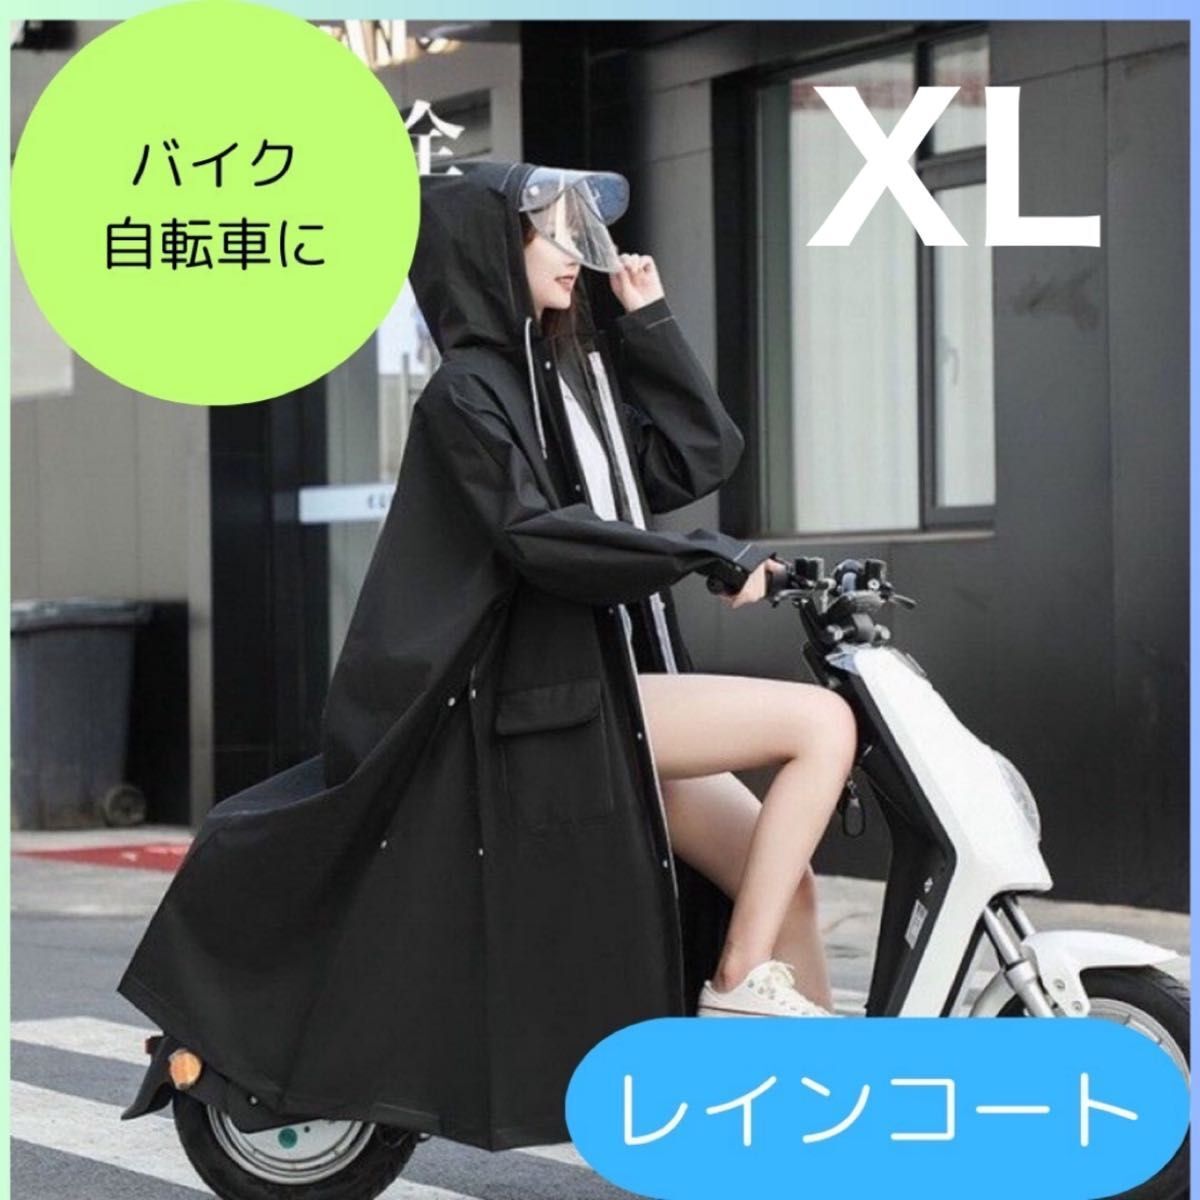 レインコート ポンチョ 男女兼用 雨具 雨合羽 二重つば 自転車 レインウェア バイク カッパ 黒XLの画像1